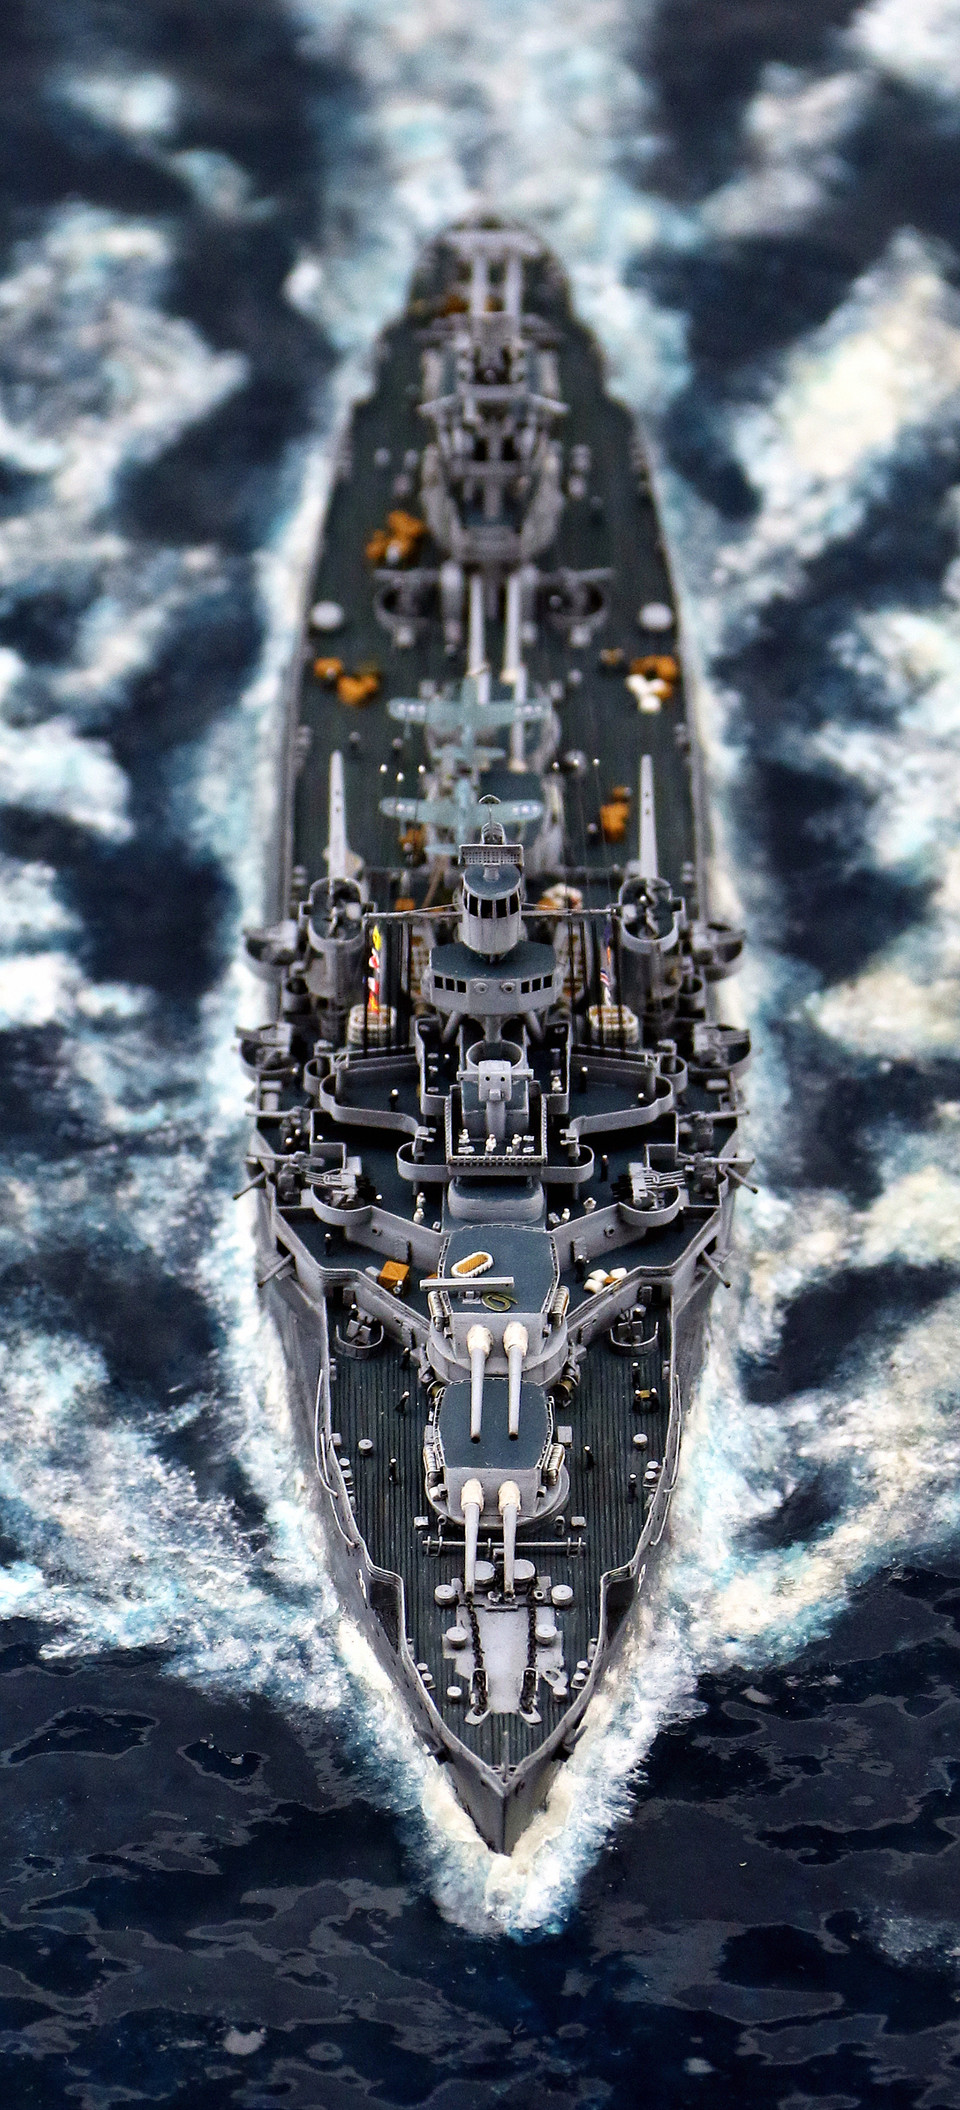 舰船欣赏:美国海军 怀俄明级战列舰